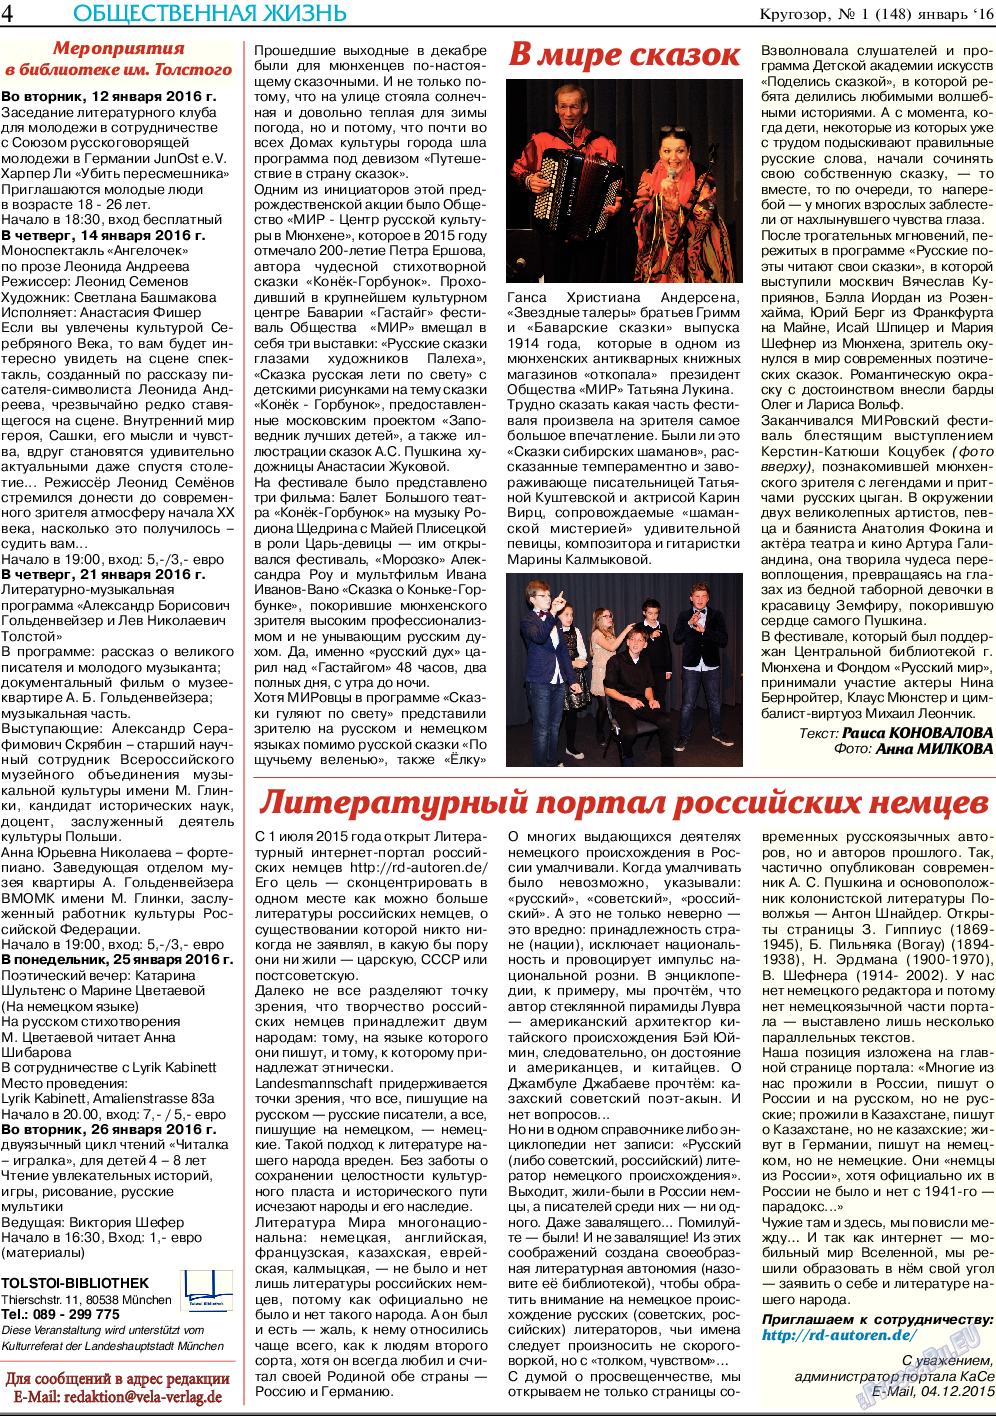 Кругозор, газета. 2016 №1 стр.4